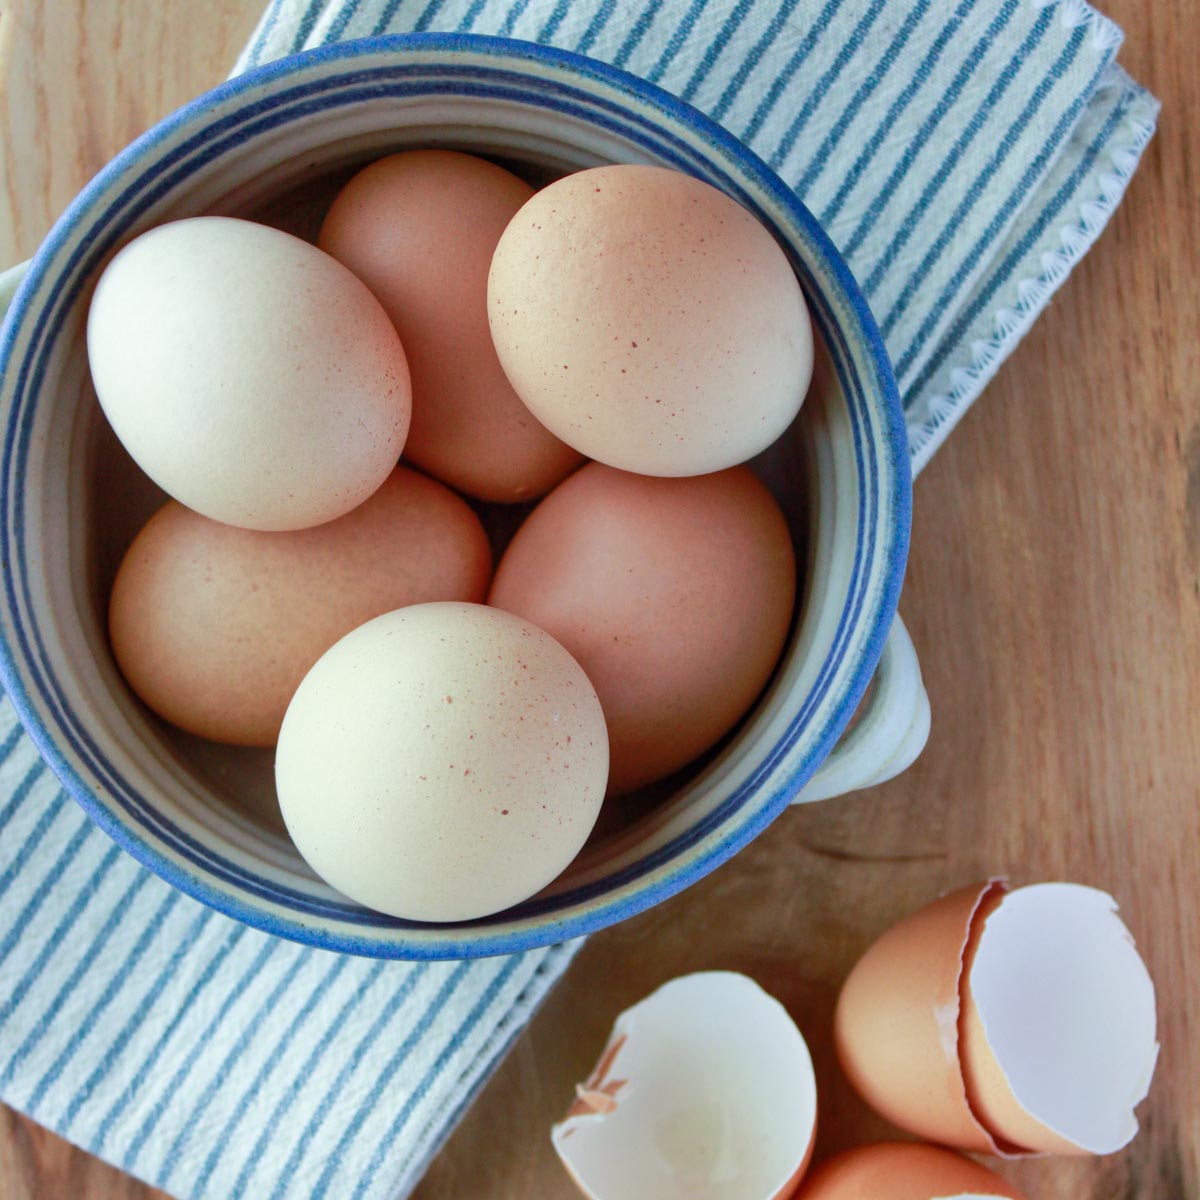 How To Buy Farm Fresh Eggs Fed By The Farm